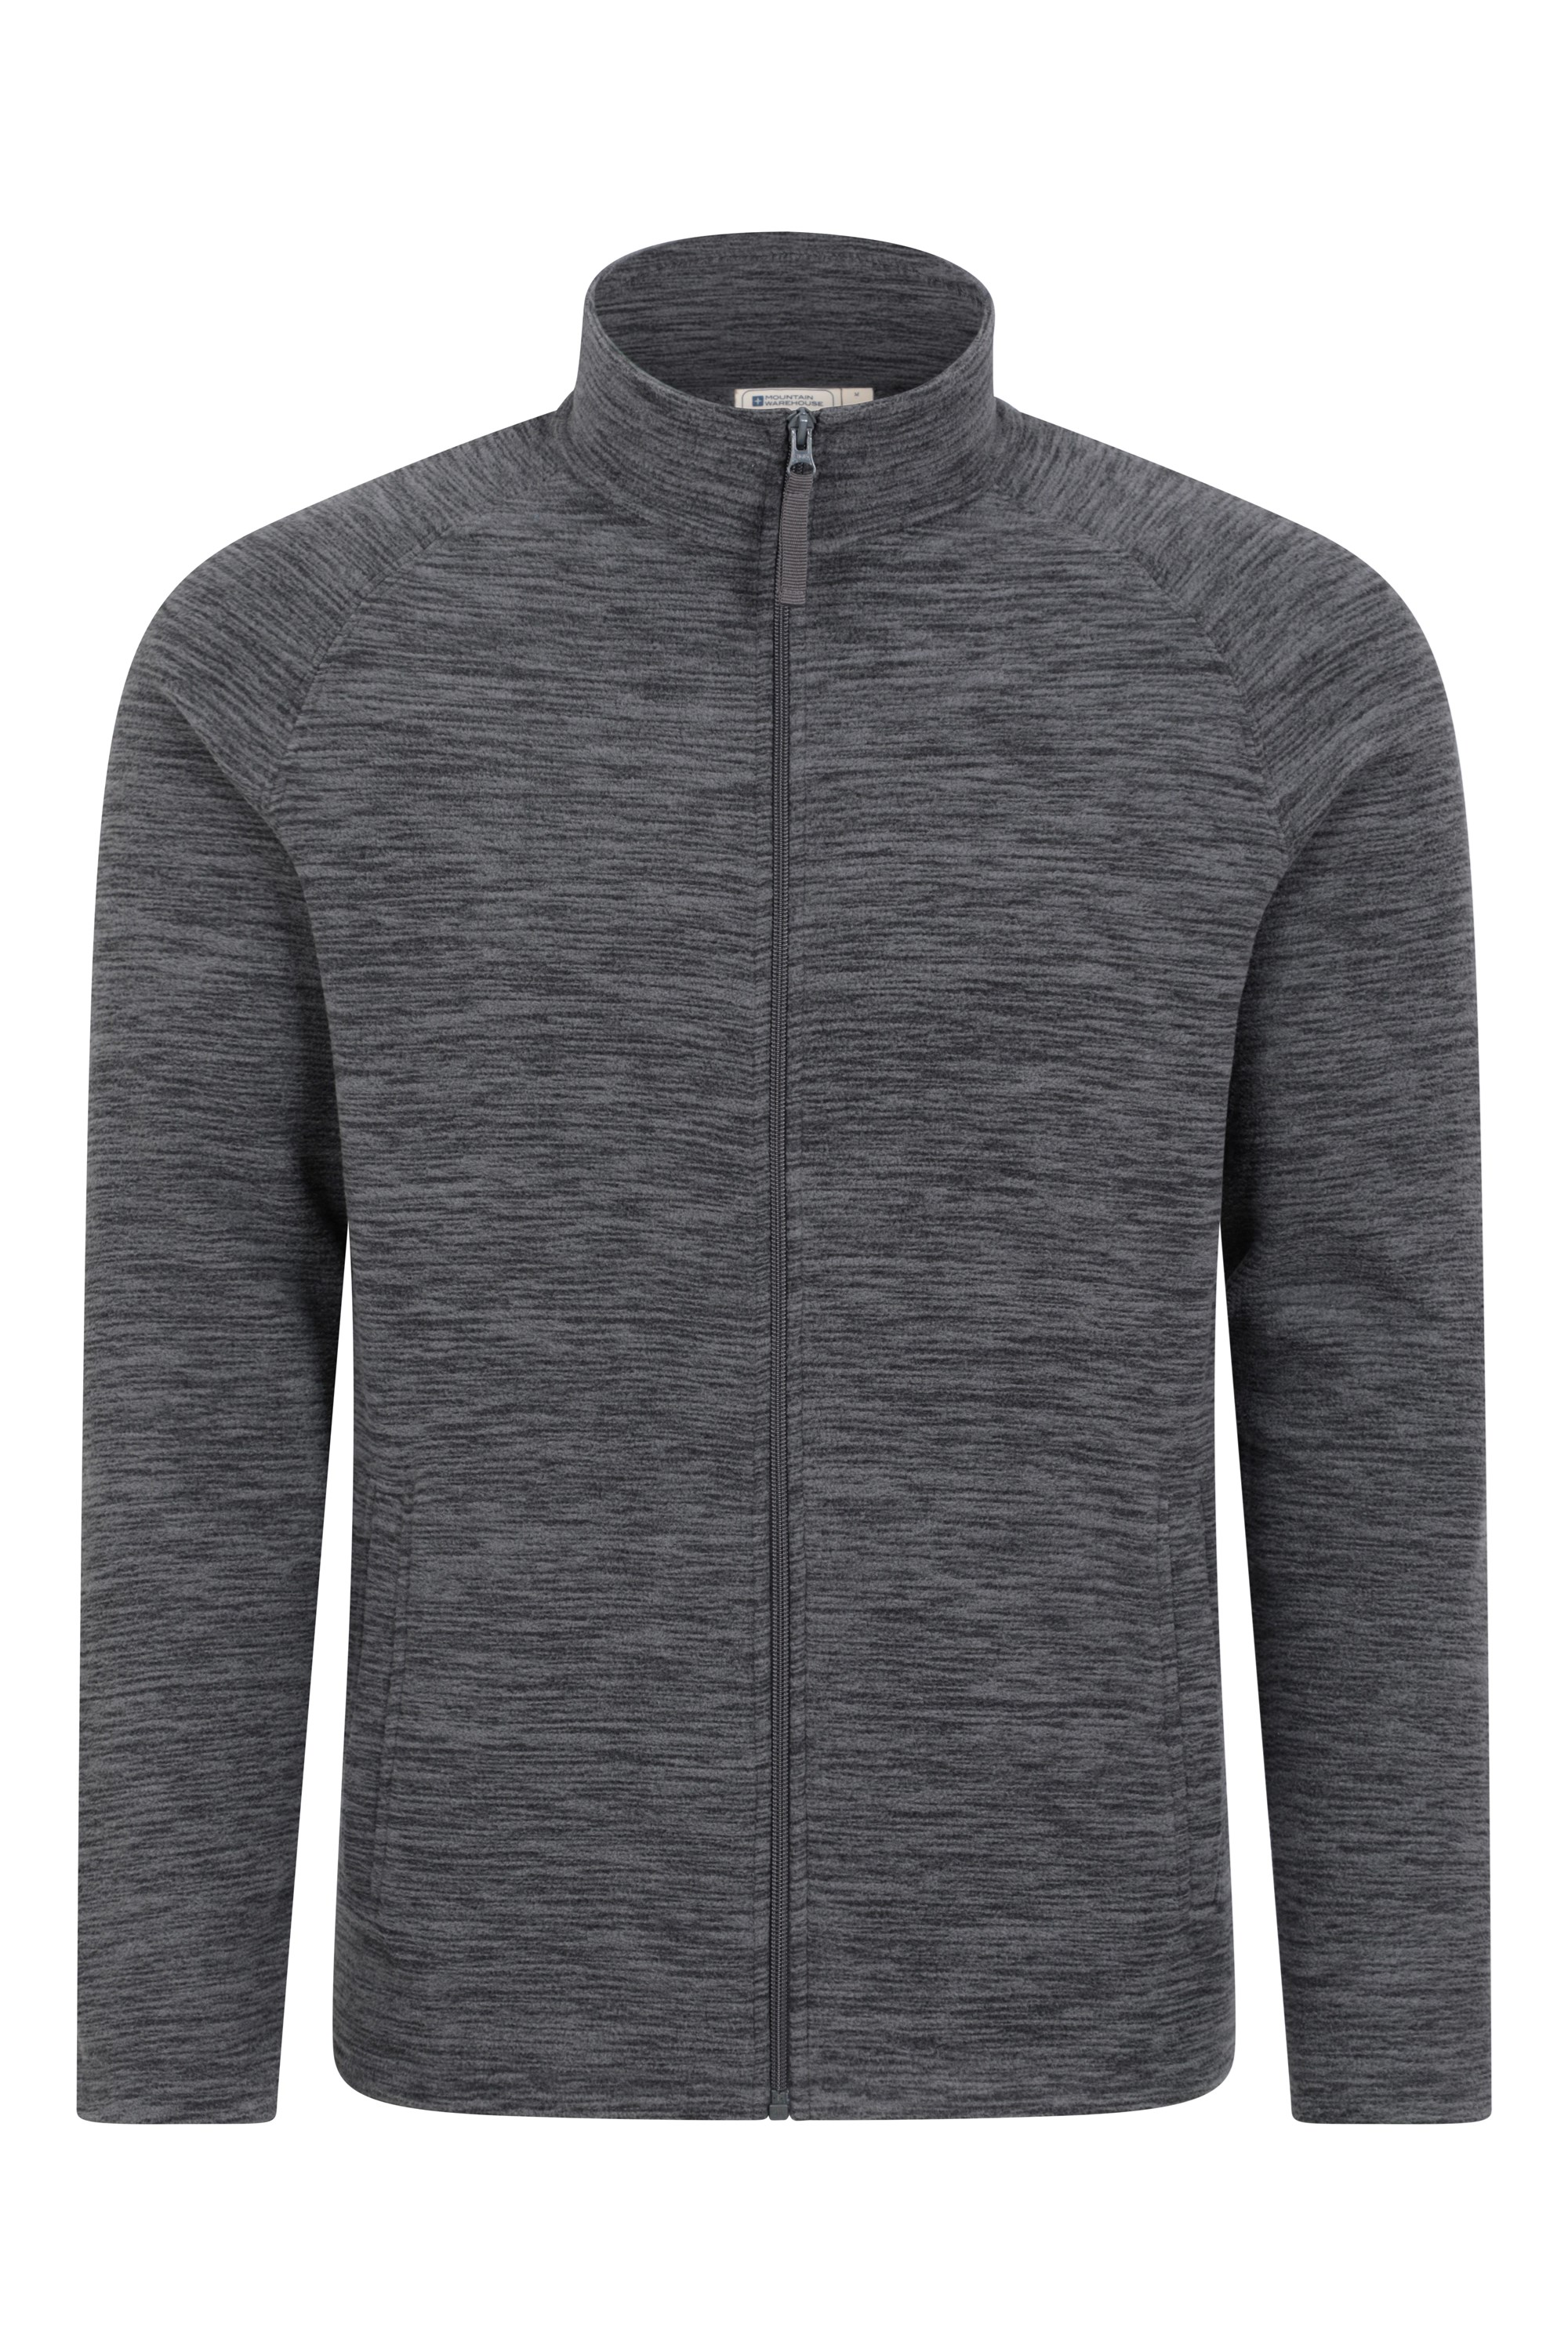 Snowdon II Mens Full-Zip Fleece Jacket - Grey